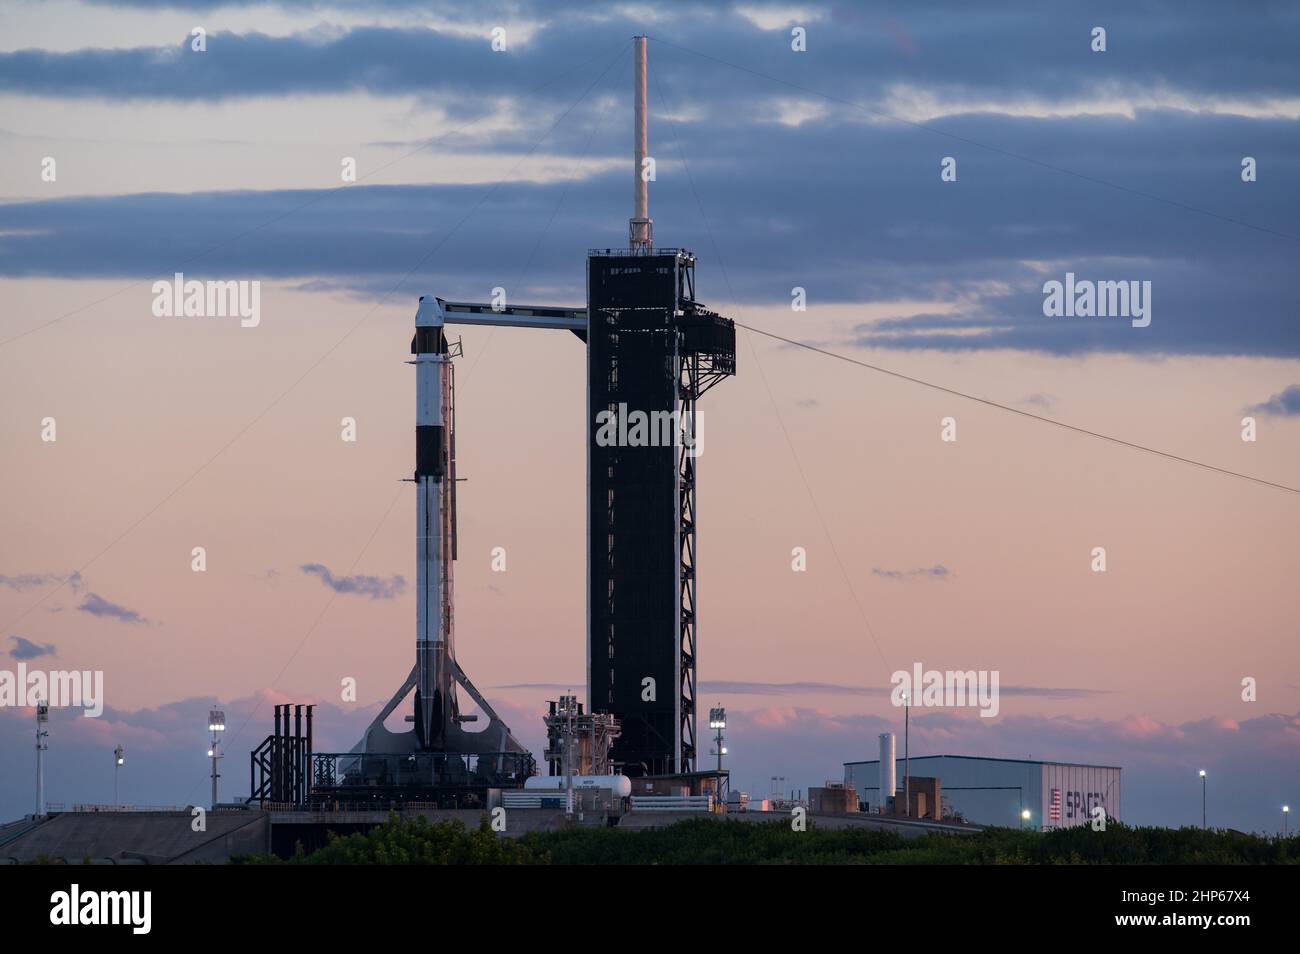 Une fusée SpaceX Falcon 9 à bord du vaisseau spatial Crew Dragon de la société est vue au coucher du soleil sur le plateau de lancement du Launch Complex 39A alors que les préparatifs se poursuivent pour la mission Crew-3, le samedi 30 octobre 2021, au Kennedy Space Center de la NASA en Floride. Banque D'Images